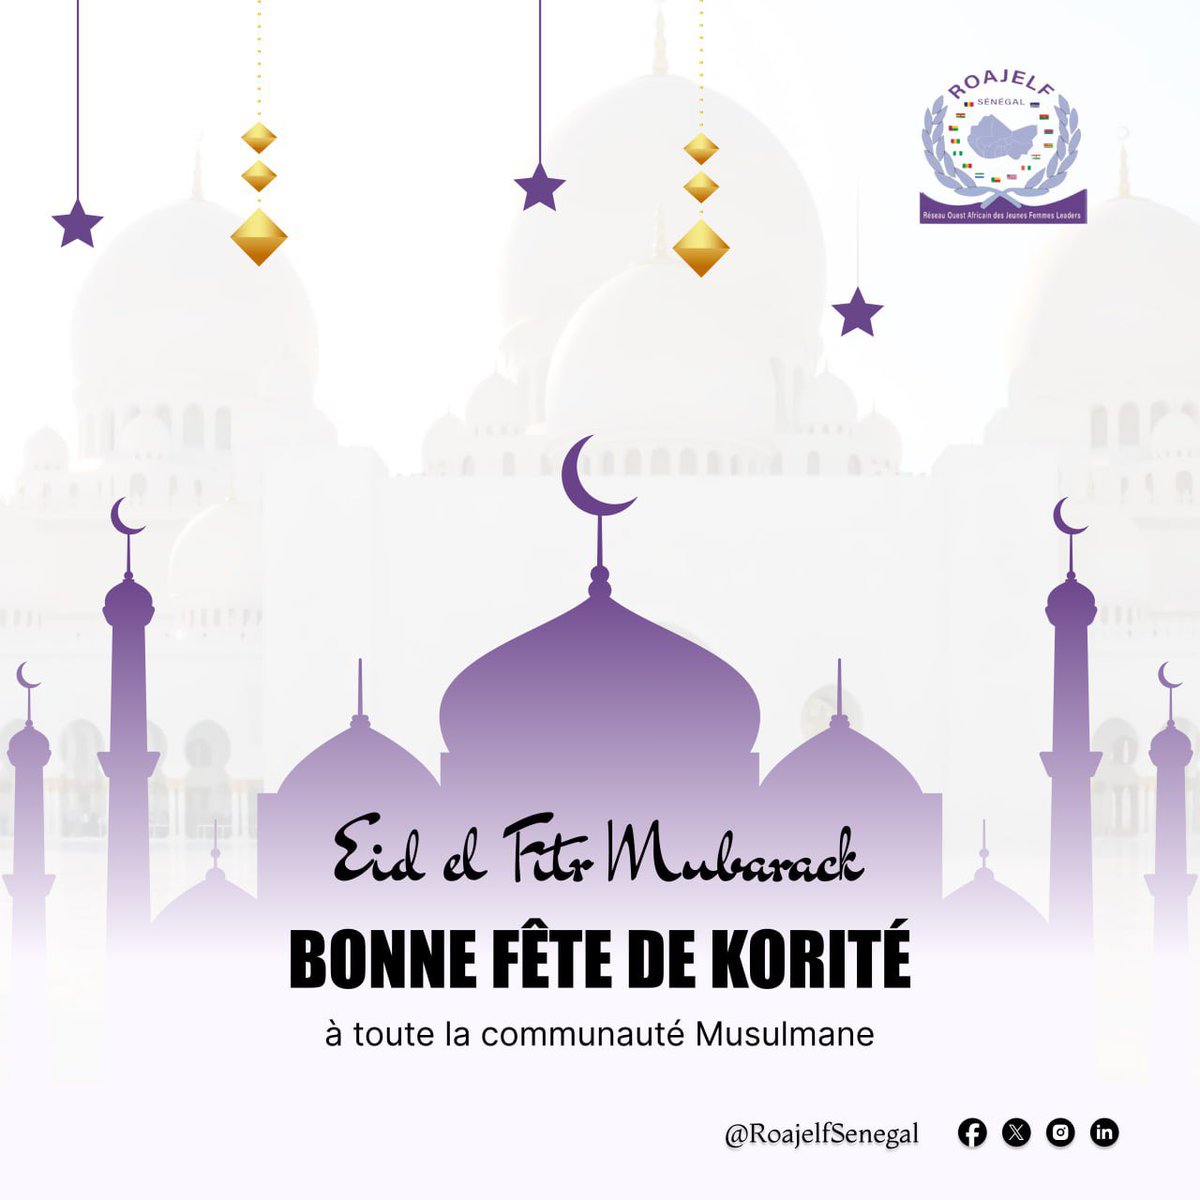 Le @RoajelfSenegal souhaite une excellente fête de Korité à toute la communauté musulmane. DEWENATY🙏🏾 #Eid_Mubarak #kebetu